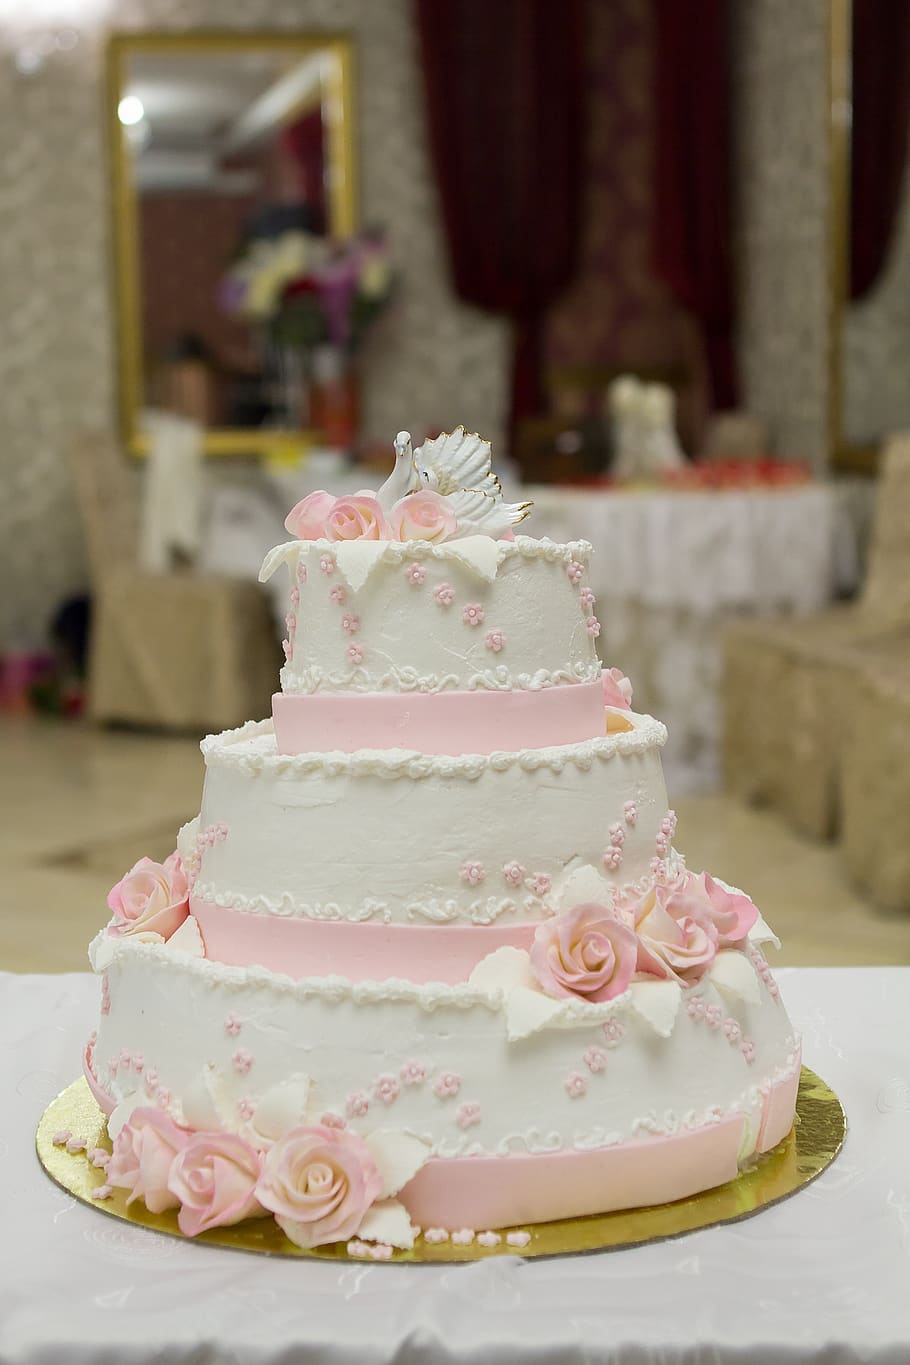 wedding, cake, wedding cake, baking, holiday, celebration, dessert, sweet, sweet food, indulgence